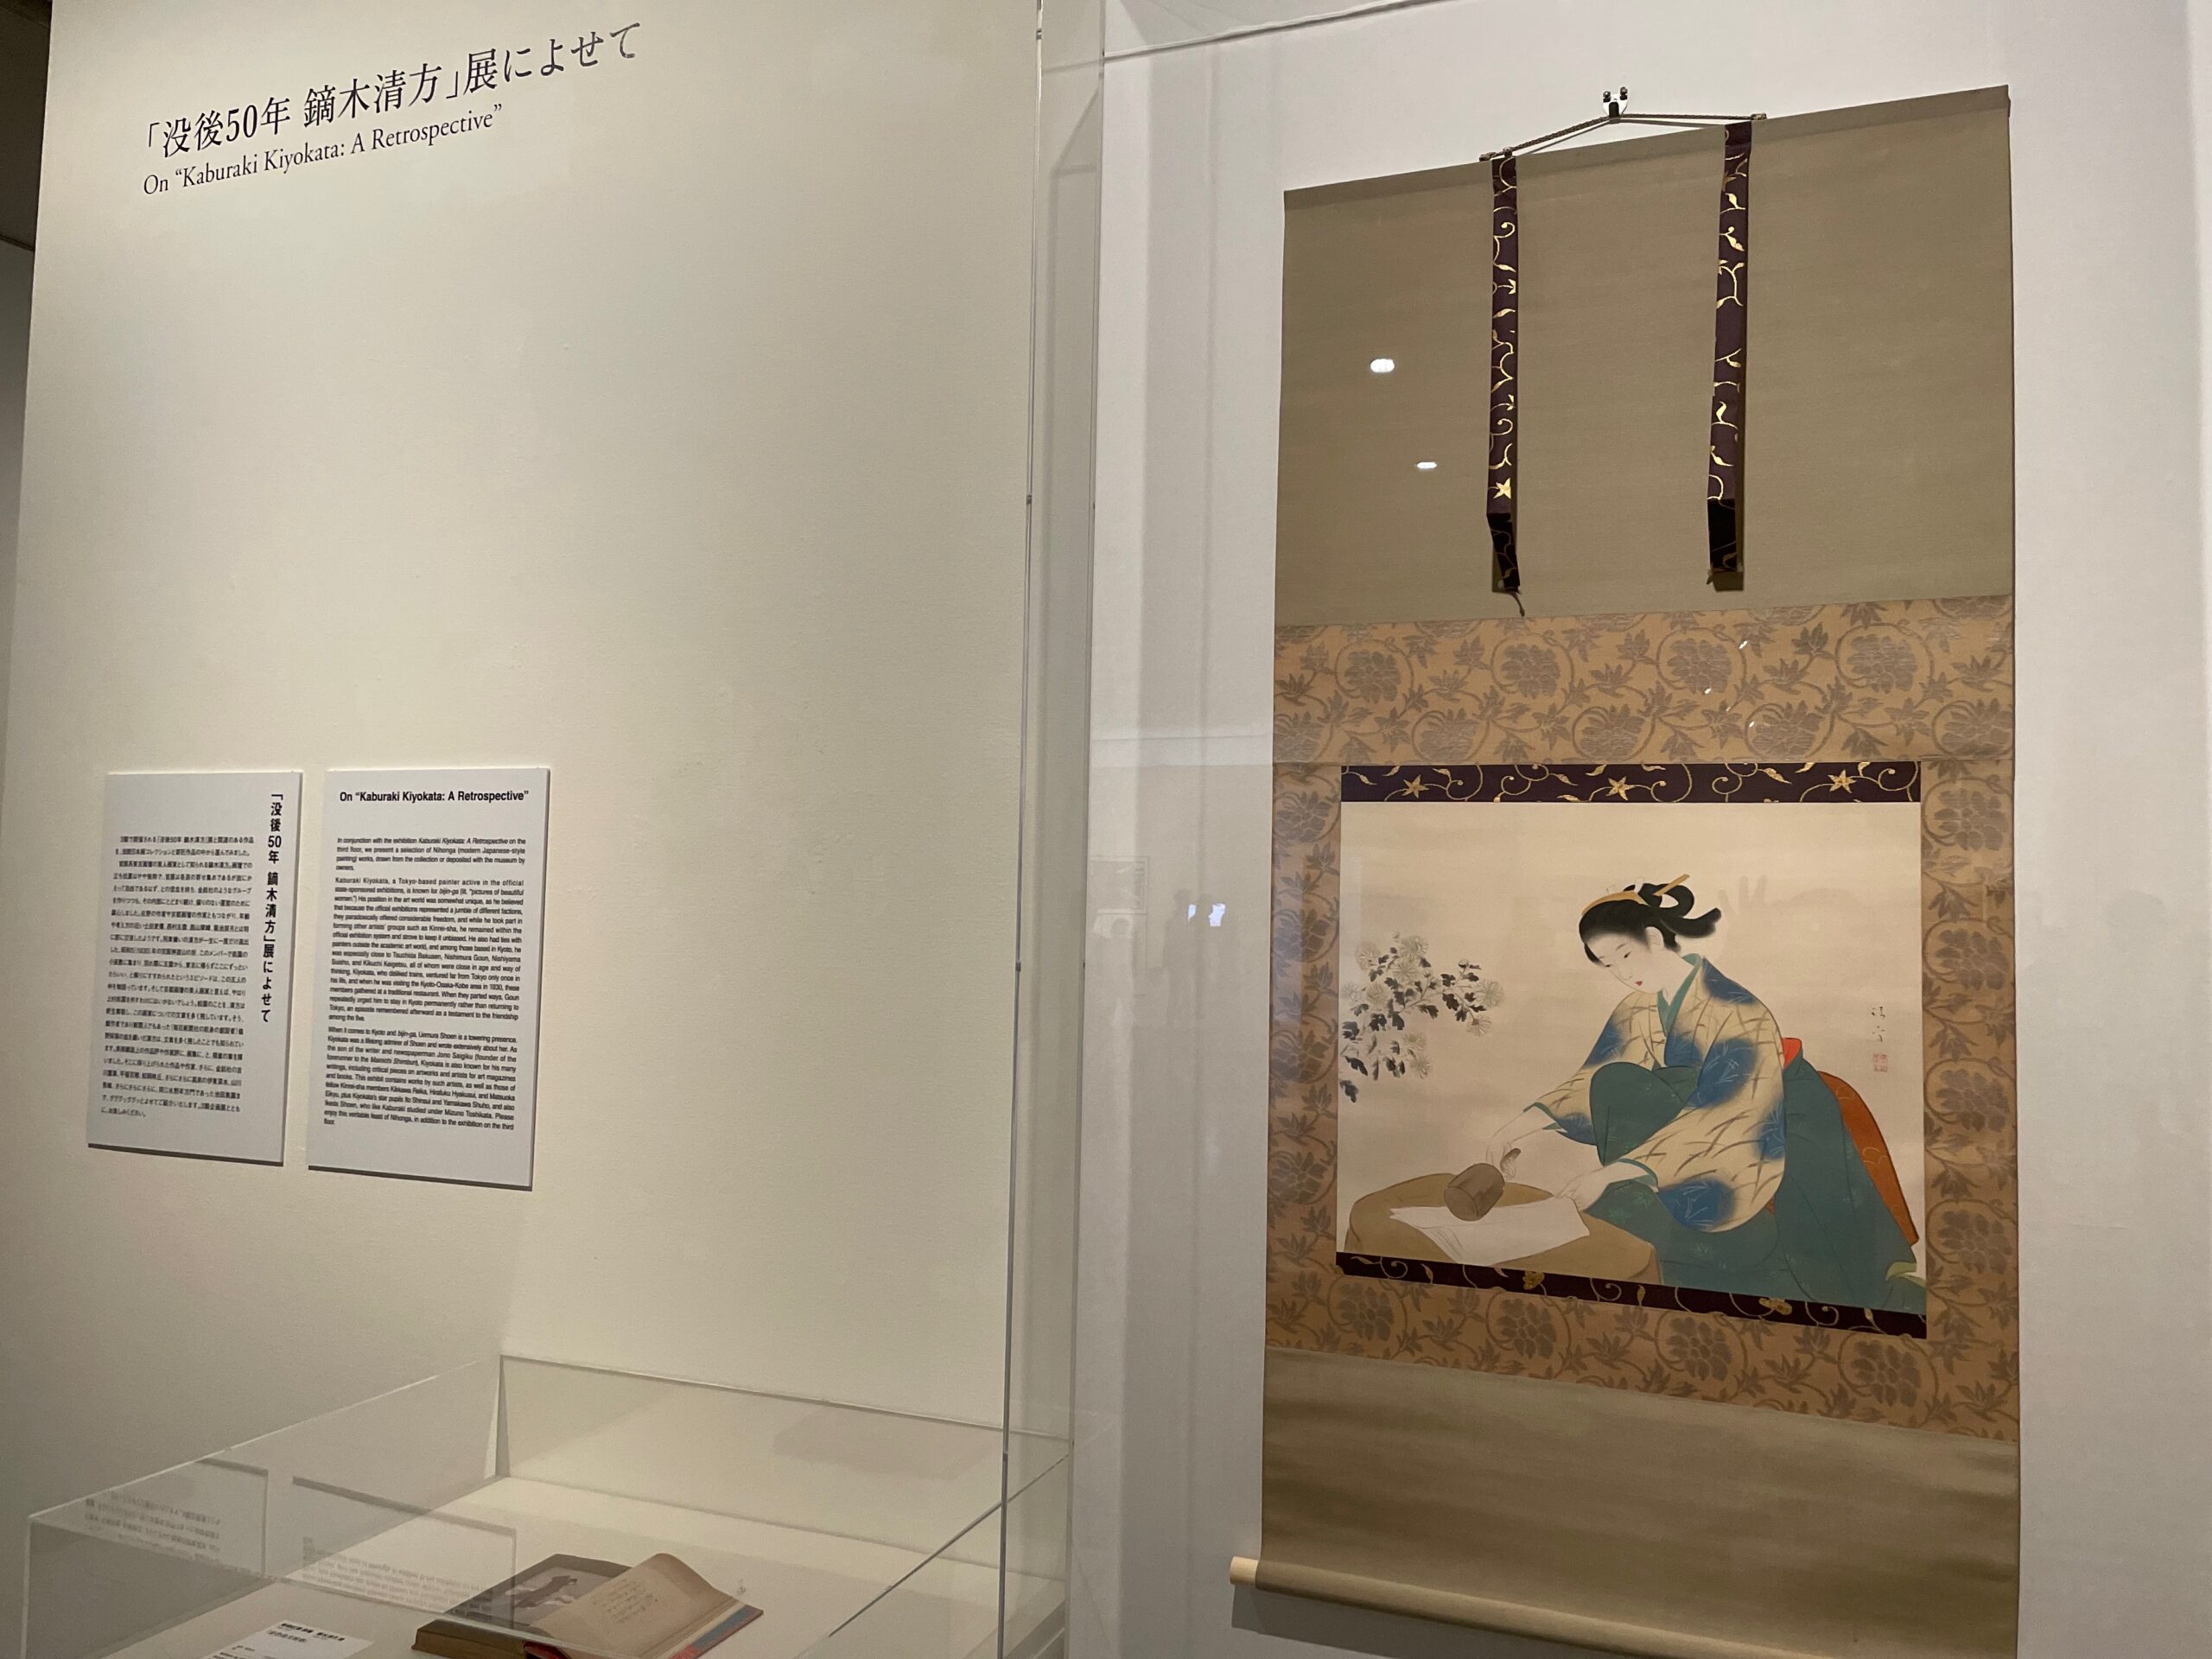 近代美人画を描いた東の巨匠Kiyokata Kaburaki没後50年を記念して ...